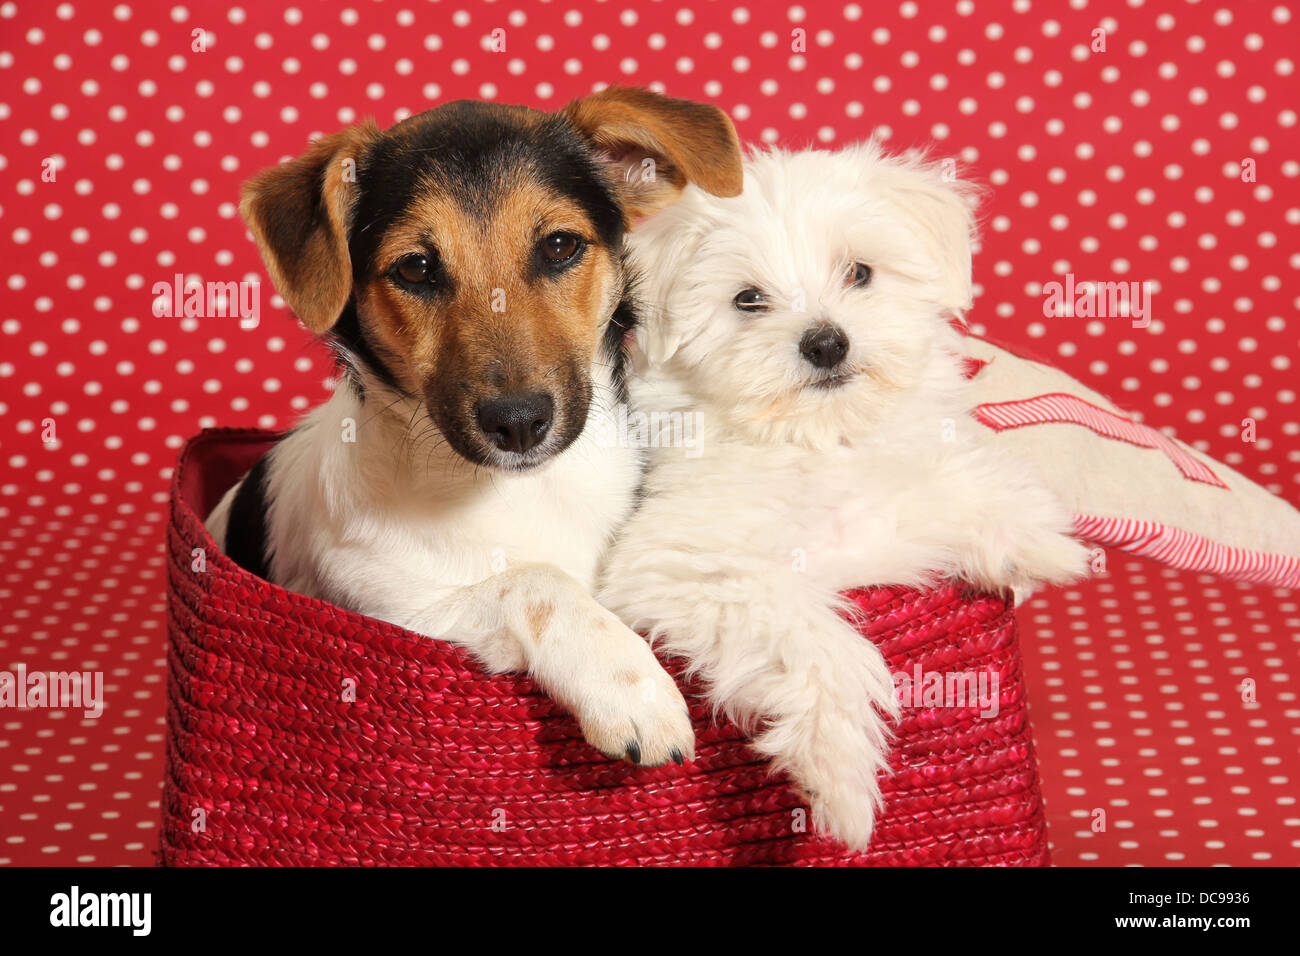 Jack Russell Terrier e il maltese cucciolo giacente in un cestello di fronte a uno sfondo rosso con il bianco a pois Foto Stock